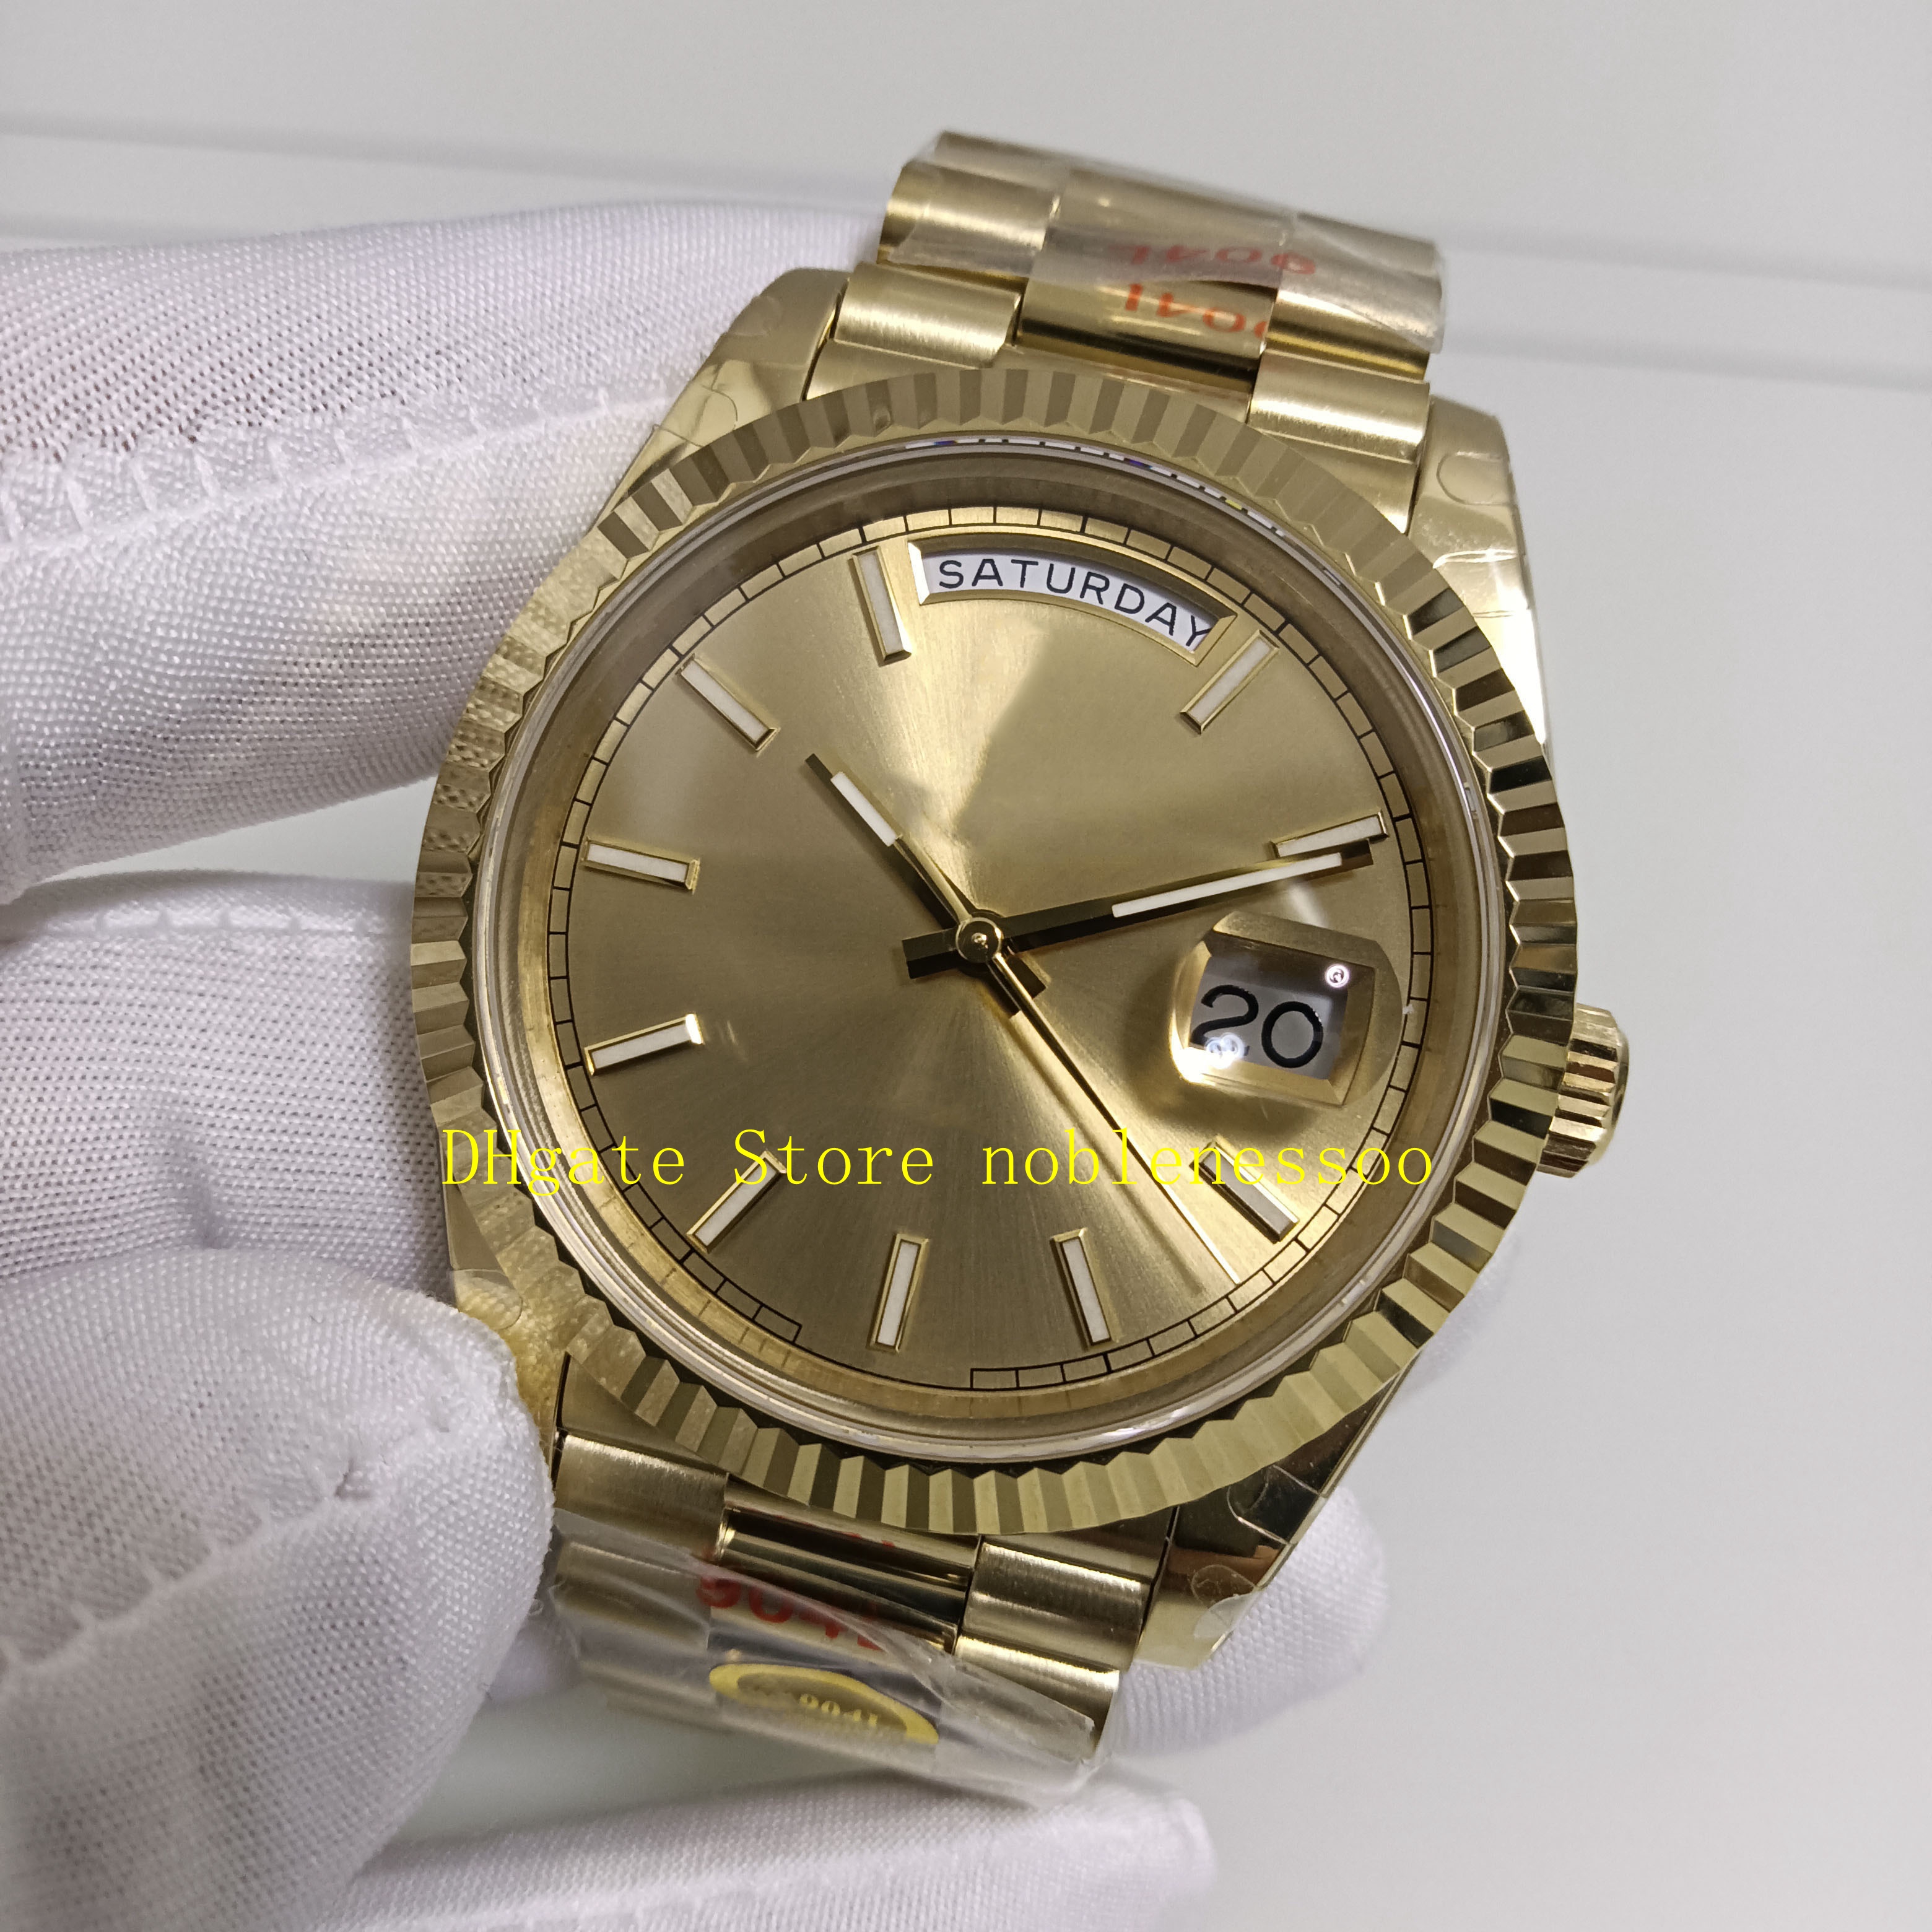 17 Kolor prawdziwy PO 904L Stalowe zegarki męskie Mężczyźni Randka 40 mm żółte złote szafir szklany szampan cal 3255 ruch mechaniczny v250l